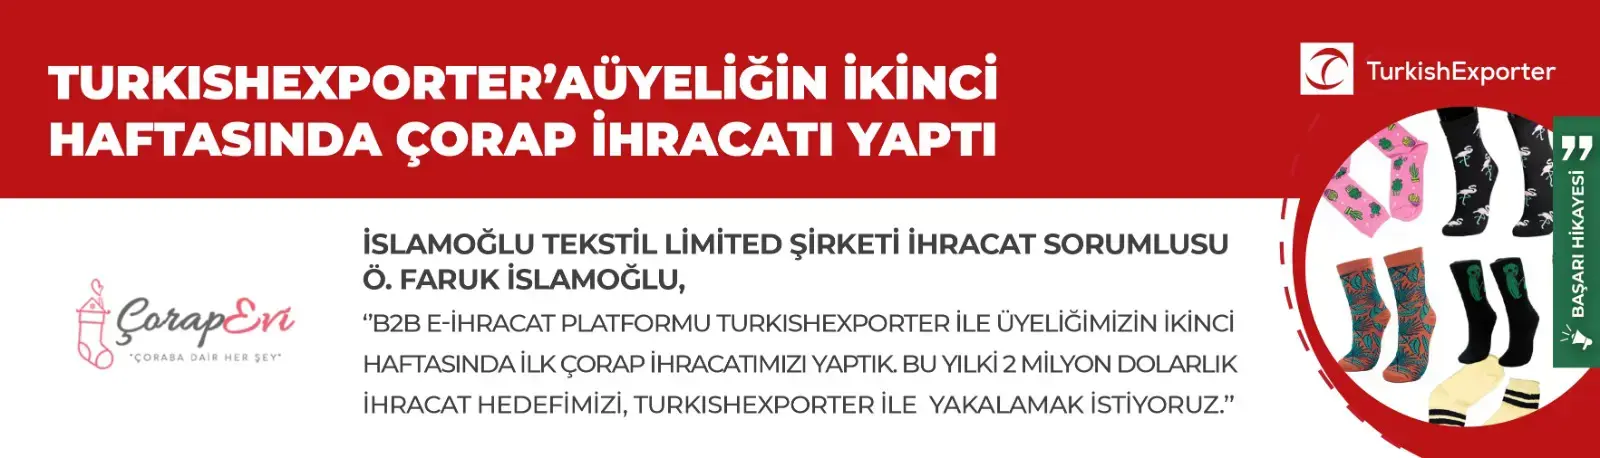 İSLAMOĞLU TEKSTİL, TURKISHEXPORTER İLE İHRACAT KAPISINI AÇTI!